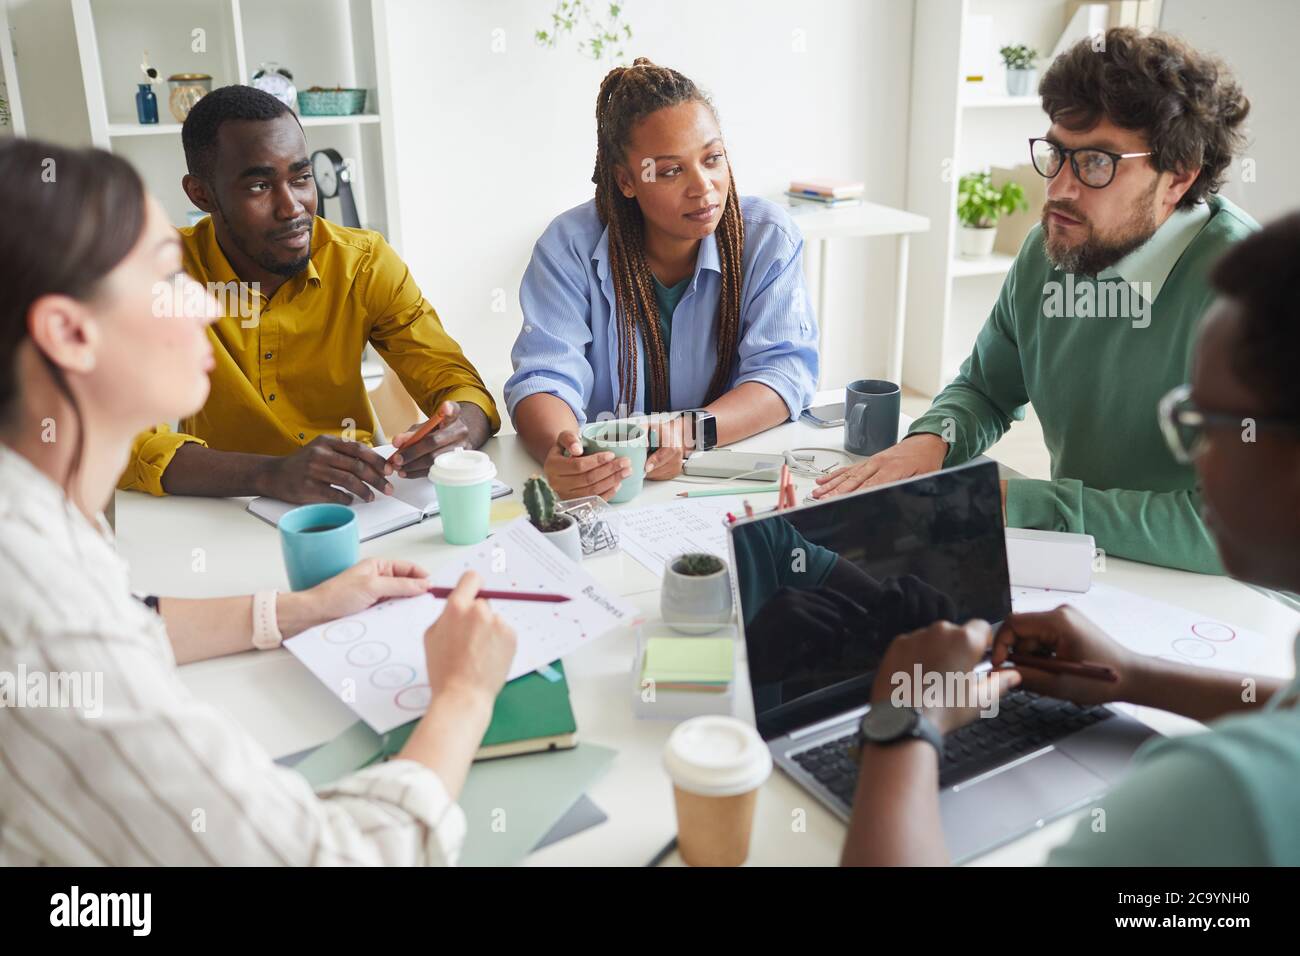 Porträt eines modernen multiethnischen Teams, das Geschäftsprojekt diskutiert, während man an einem überladen Tisch im Konferenzraum sitzt und dem Manager zuhört, um Platz zu kopieren Stockfoto